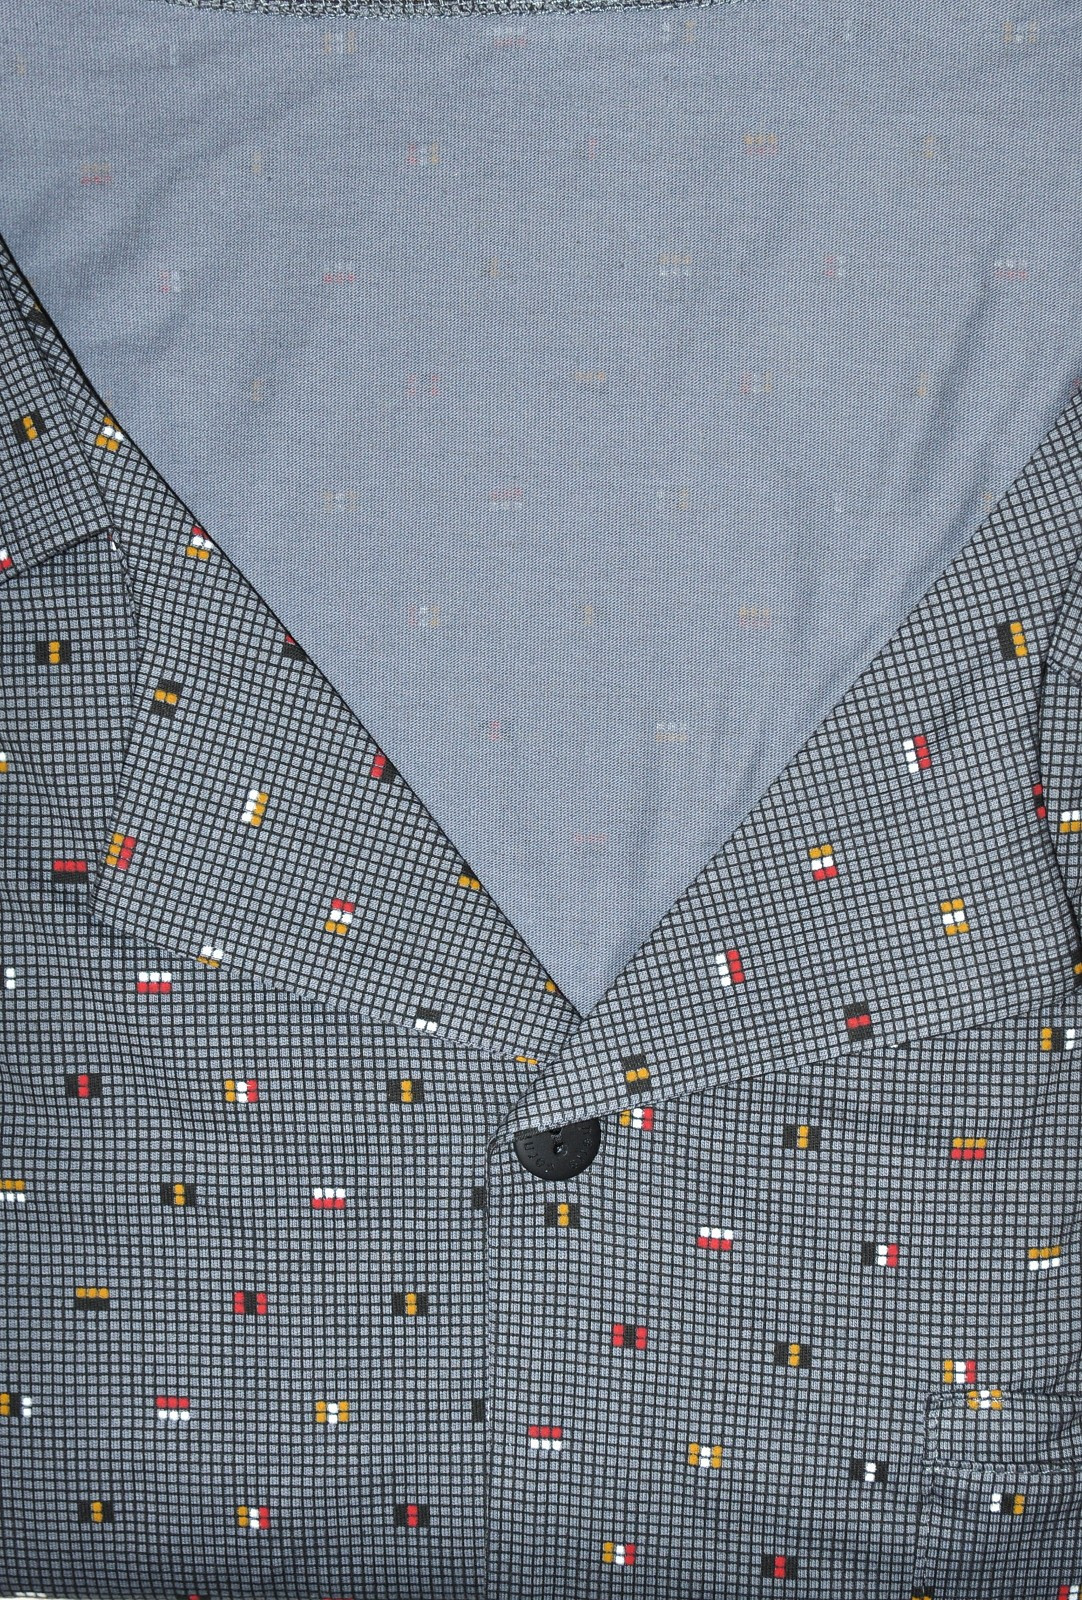 Pánské rozepínací pyžamo Cornette 318/43 3XL-5XL šedá 3xl